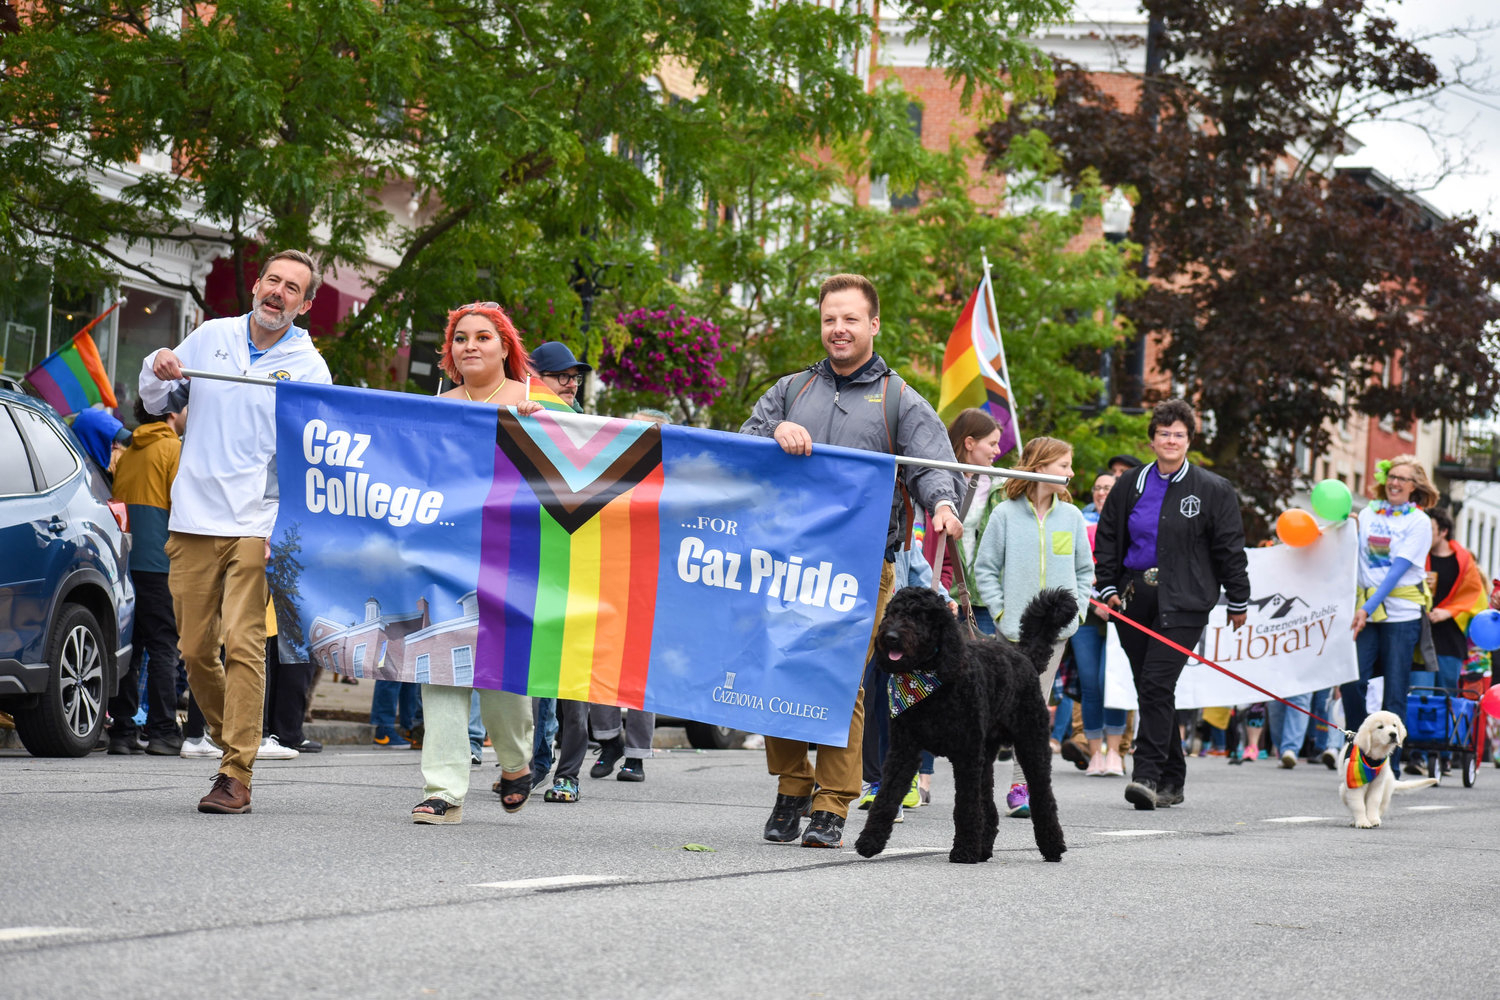 Representatives from Cazenovia College participated in the pride parade.